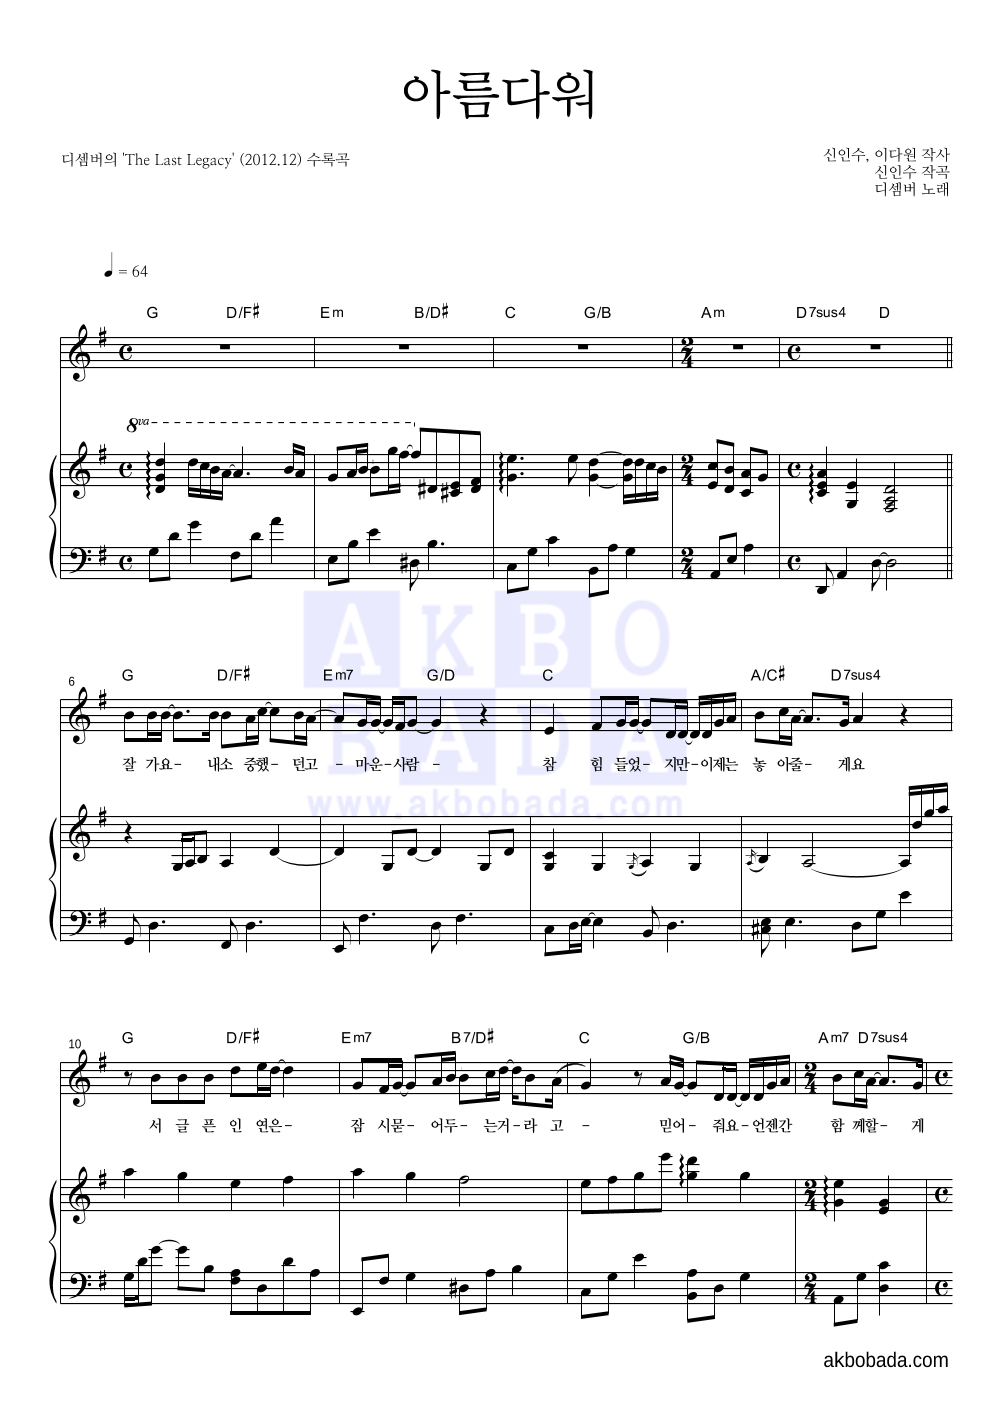 디셈버 - 아름다워 피아노 3단 악보 